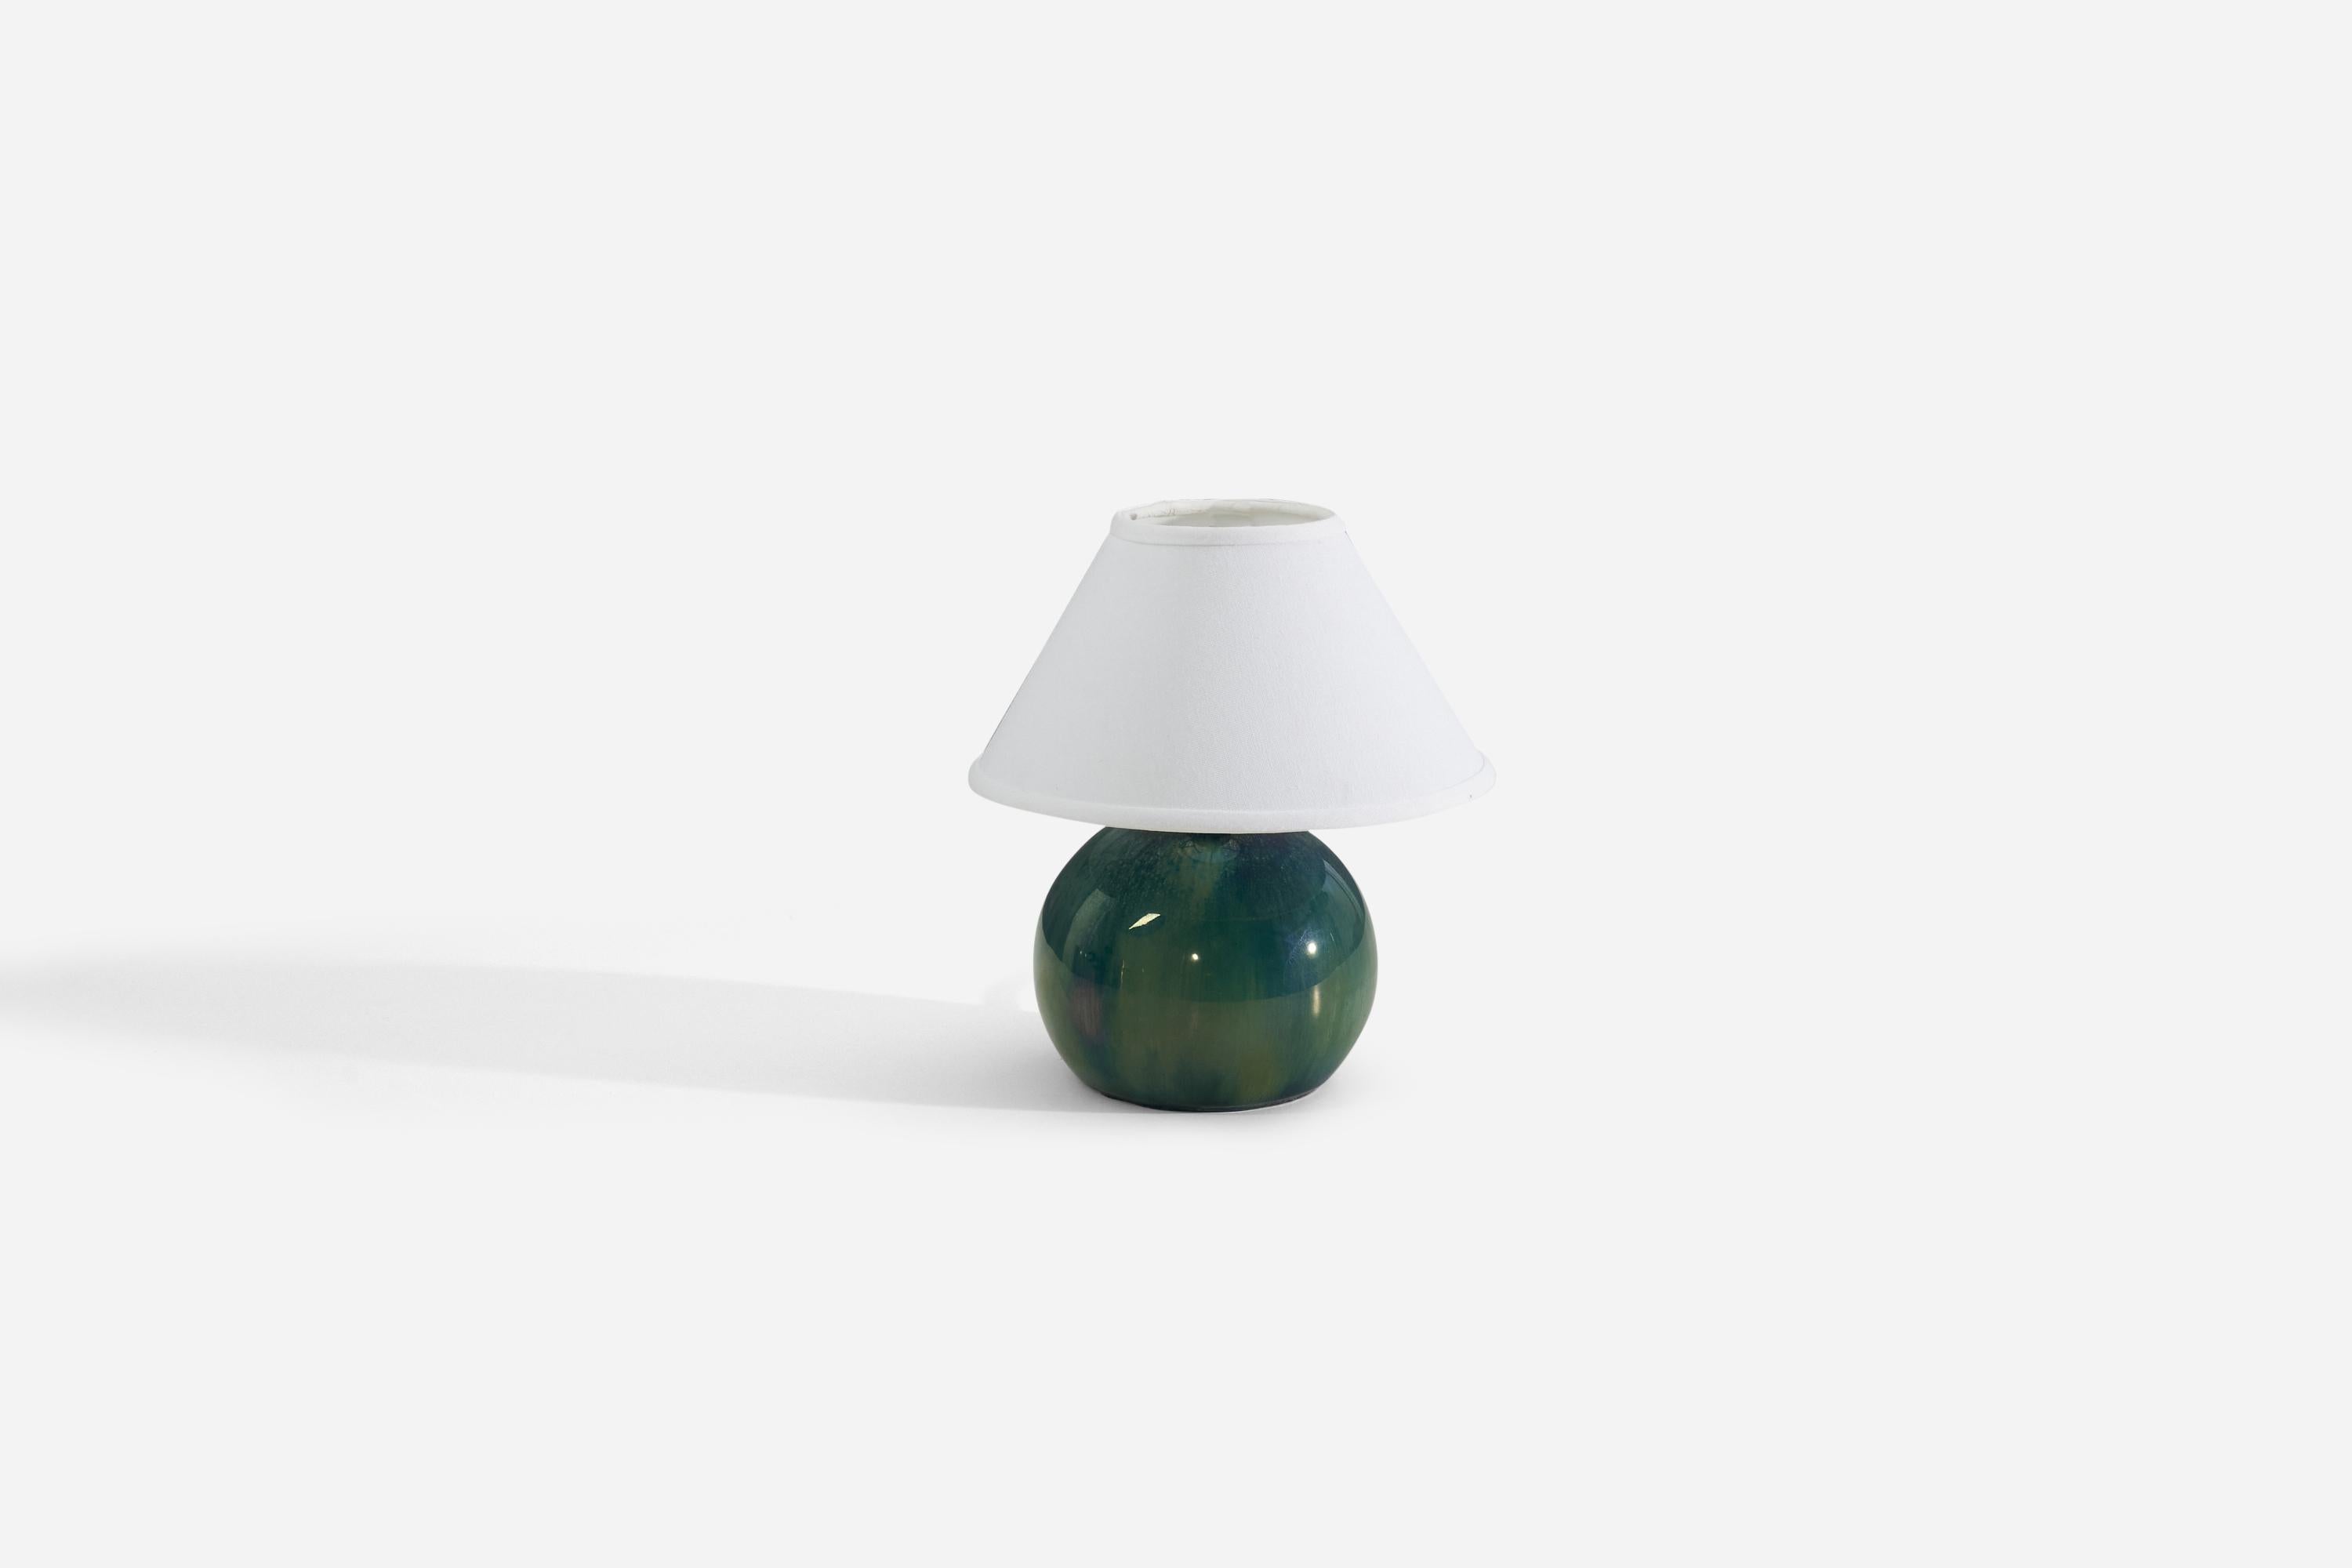 Tischlampe aus grün glasierter Keramik, entworfen und hergestellt in Frankreich, ca. 1940er Jahre.

Die angegebenen Maße beziehen sich auf die Lampe, die ohne Lampenschirm verkauft wird.

Als Referenz:

Schirm : 4,5 x 10,25 x 6
Lampe mit